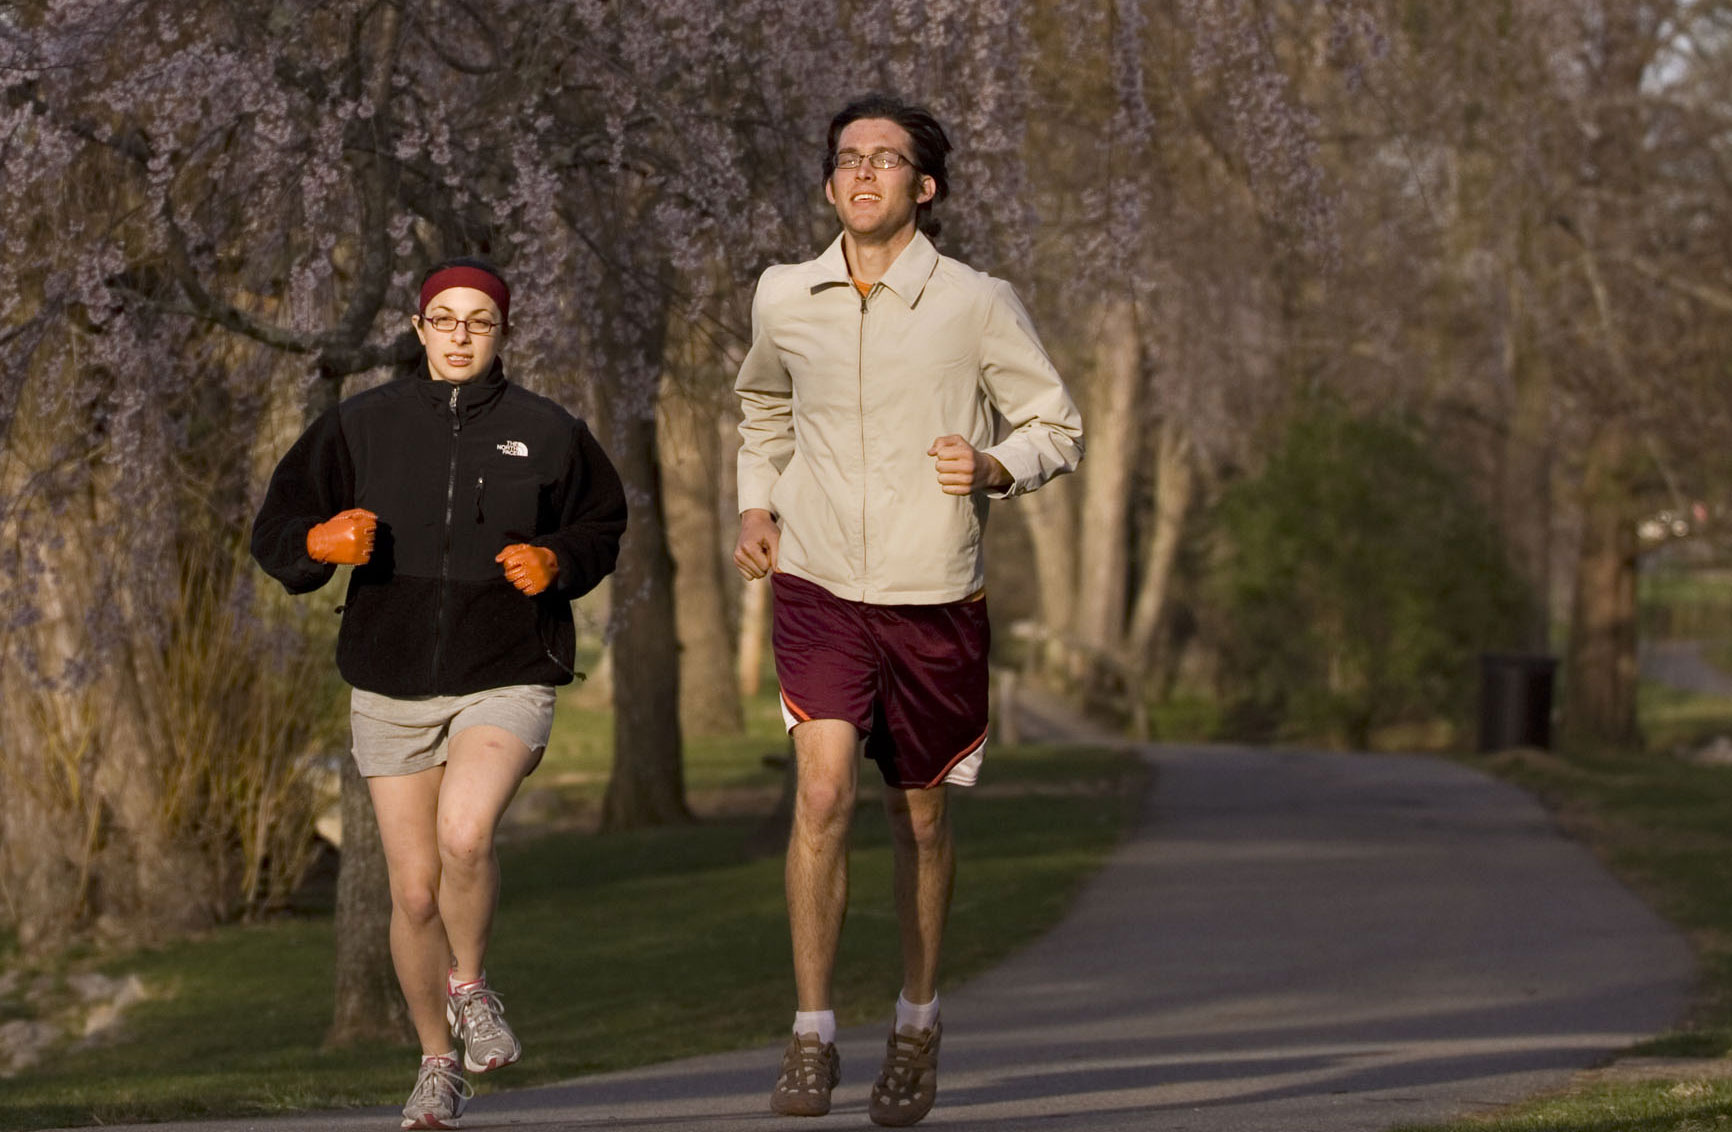 Students run on campus